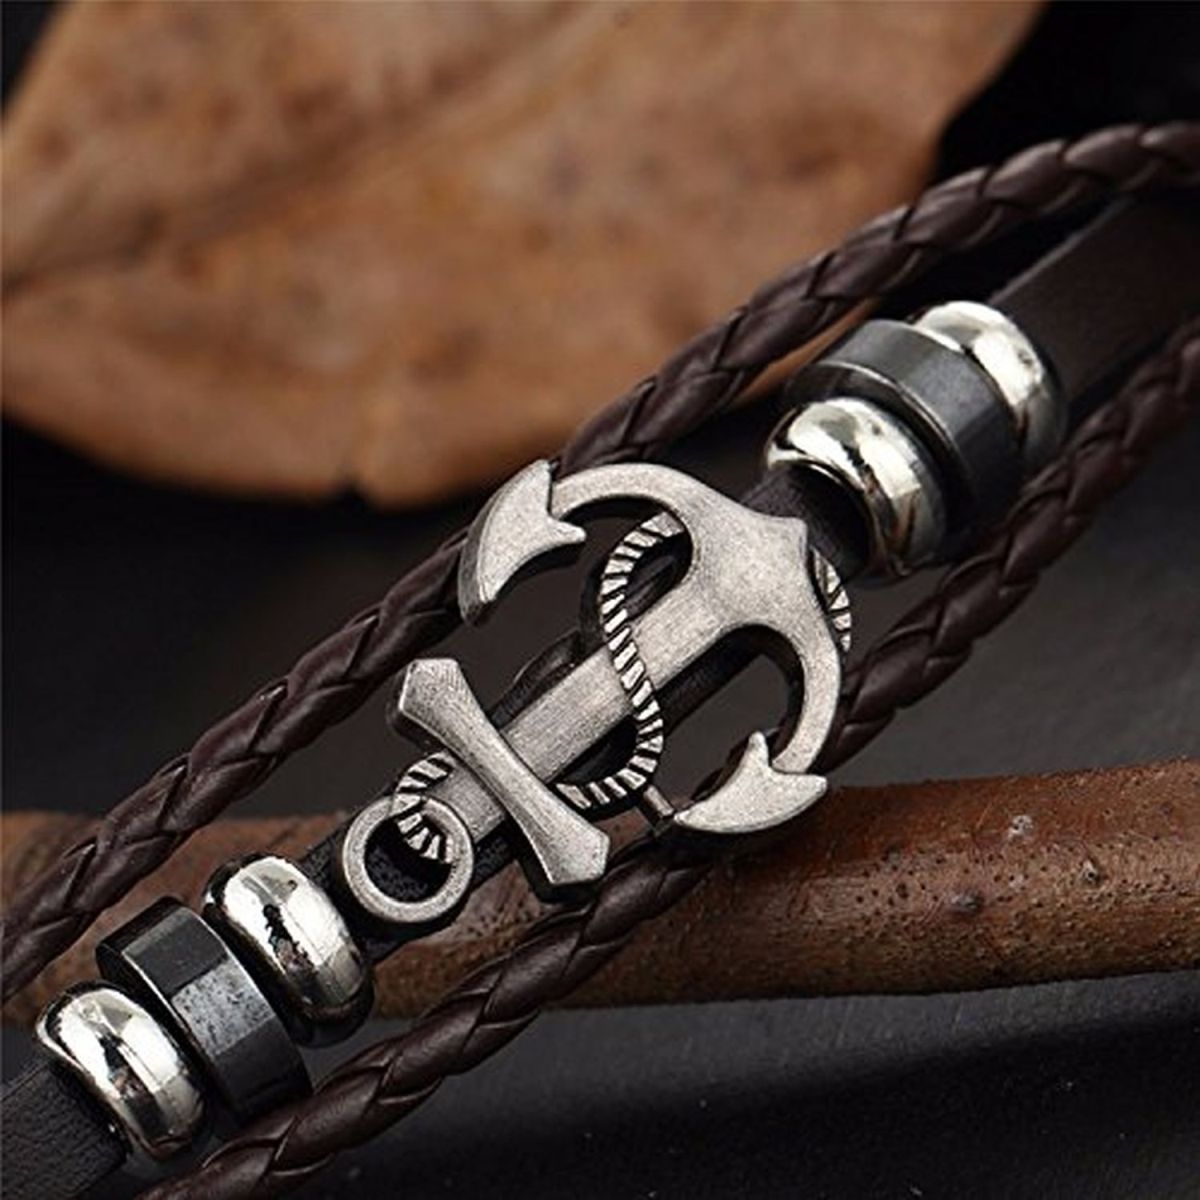 Buy Blingg Pirate Anchor Leather Bracelet Gift for Men  Women at Amazonin